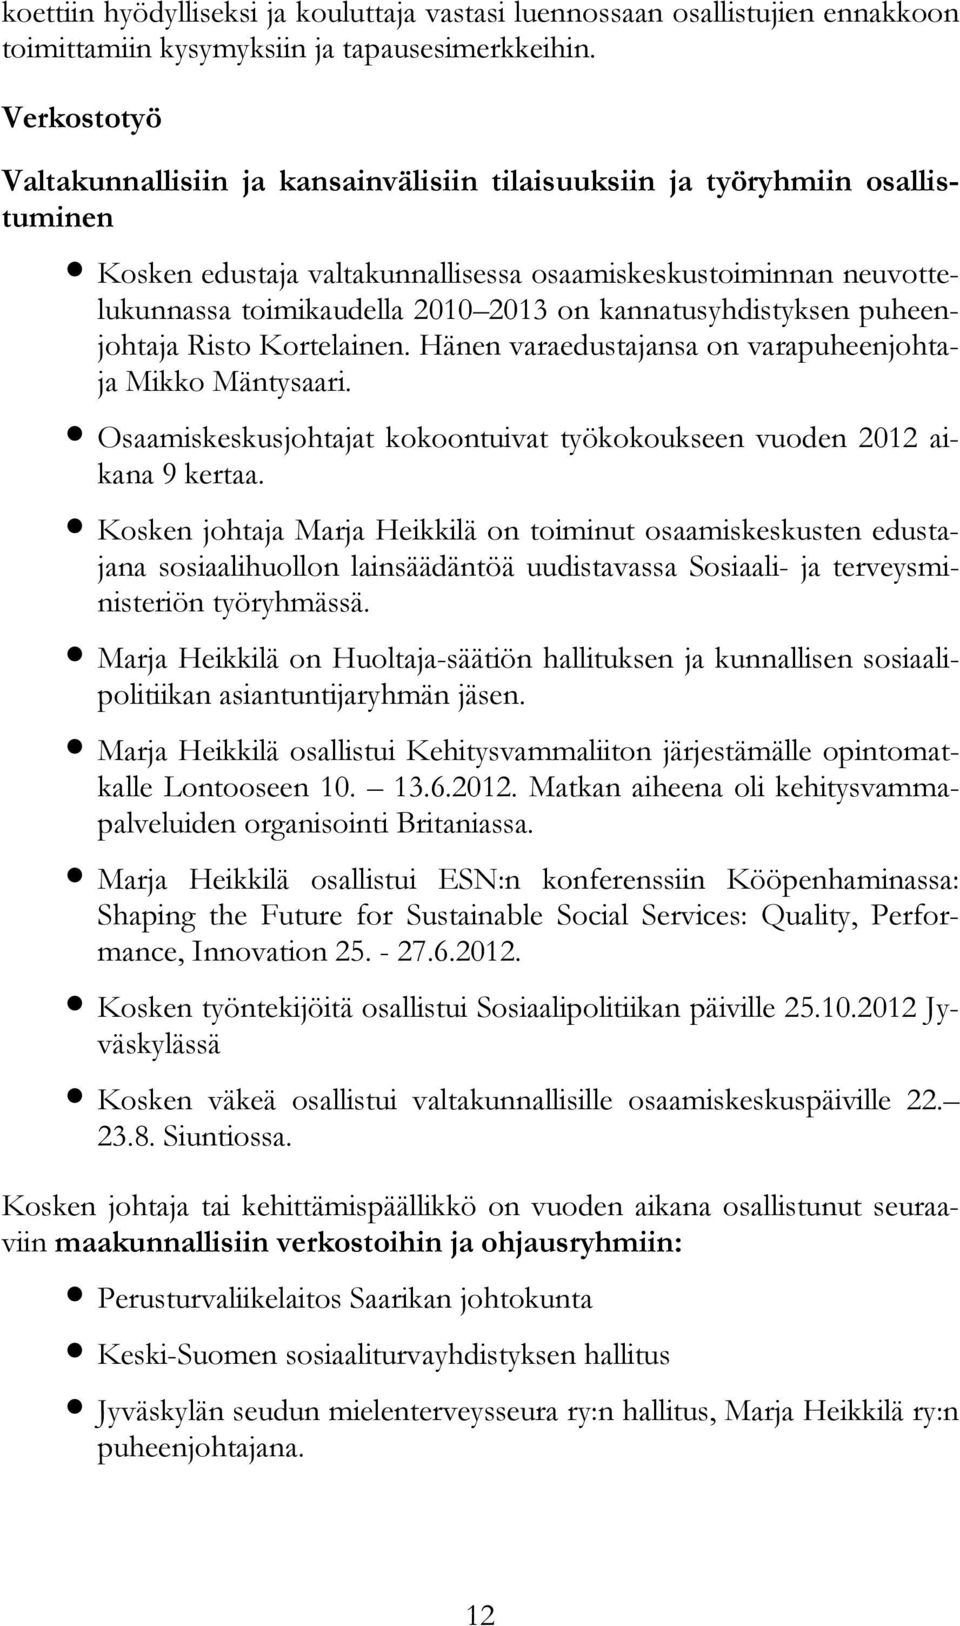 kannatusyhdistyksen puheenjohtaja Risto Kortelainen. Hänen varaedustajansa on varapuheenjohtaja Mikko Mäntysaari. Osaamiskeskusjohtajat kokoontuivat työkokoukseen vuoden 2012 aikana 9 kertaa.